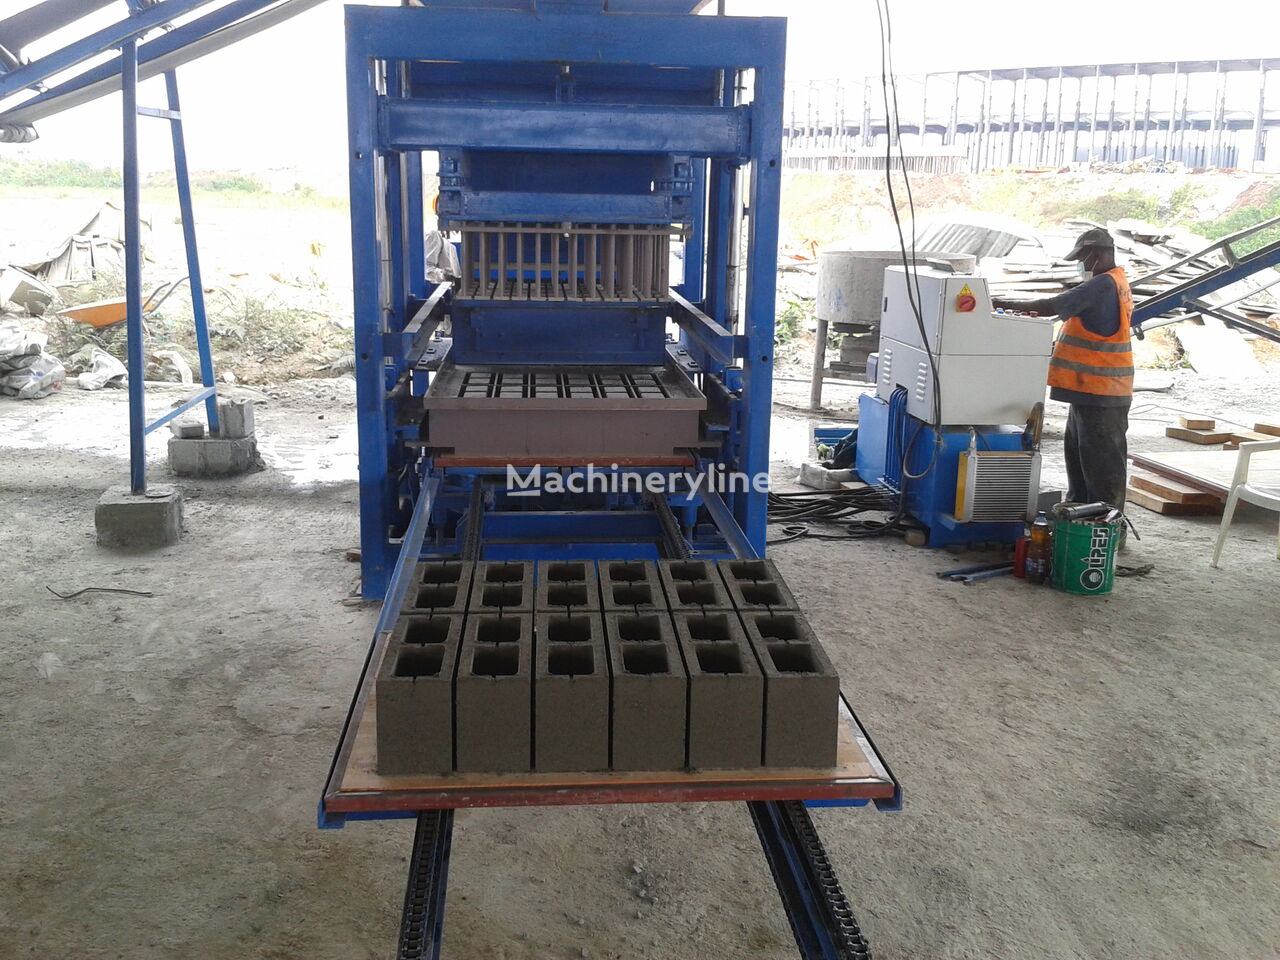 جديدة كتلة ماكينة Conmach BlockKing-25MS Concrete Block Making Machine -10.000 units/shift